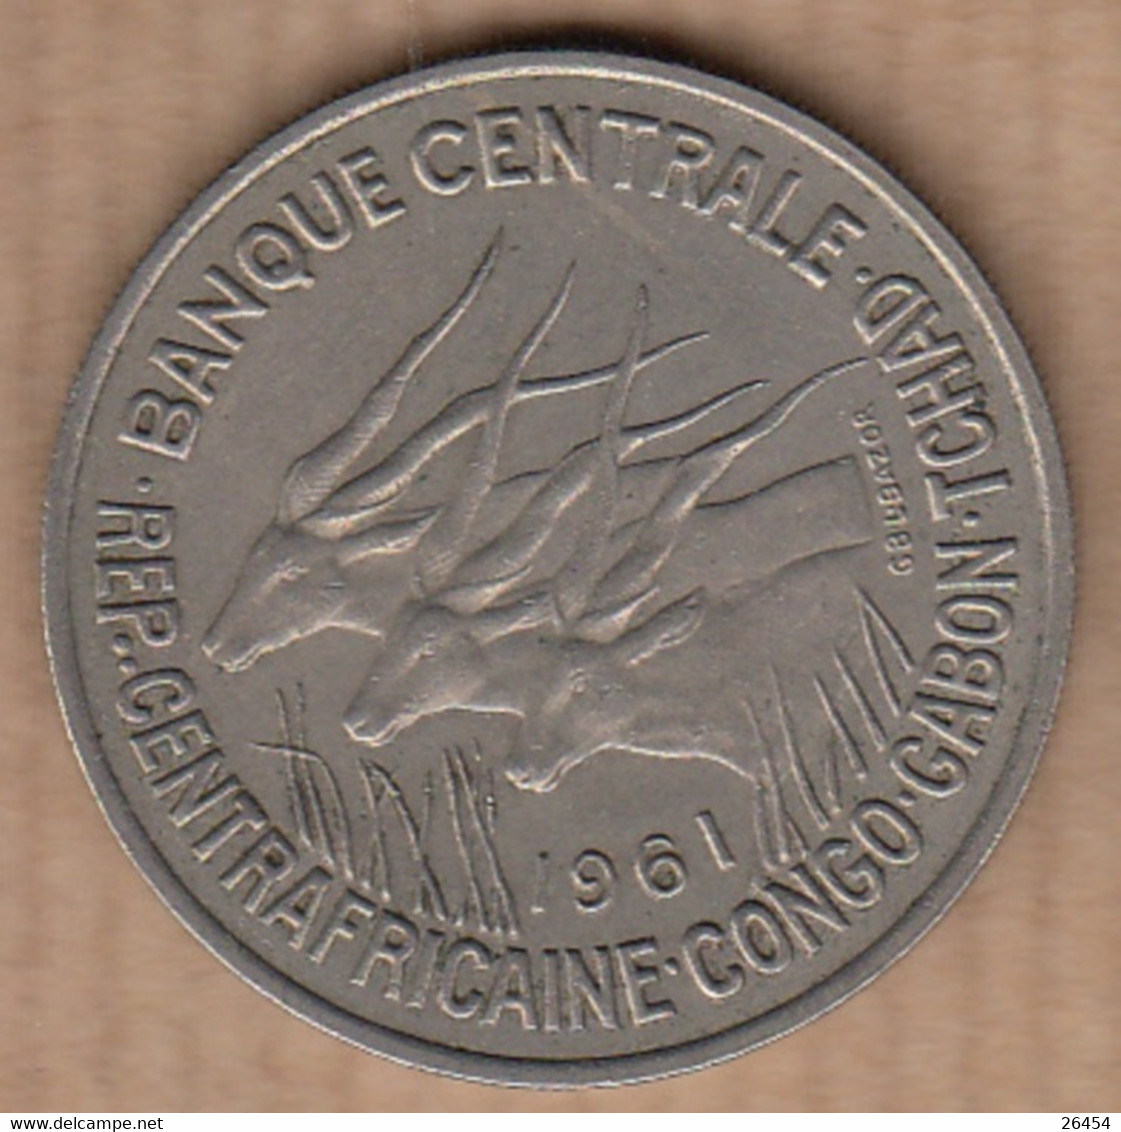 BANQUE CENTRALE CENTRAFRICAINE-CONGO-GABON       Pièce De Monnaie  De 50F   Année 1961 - Non Classés